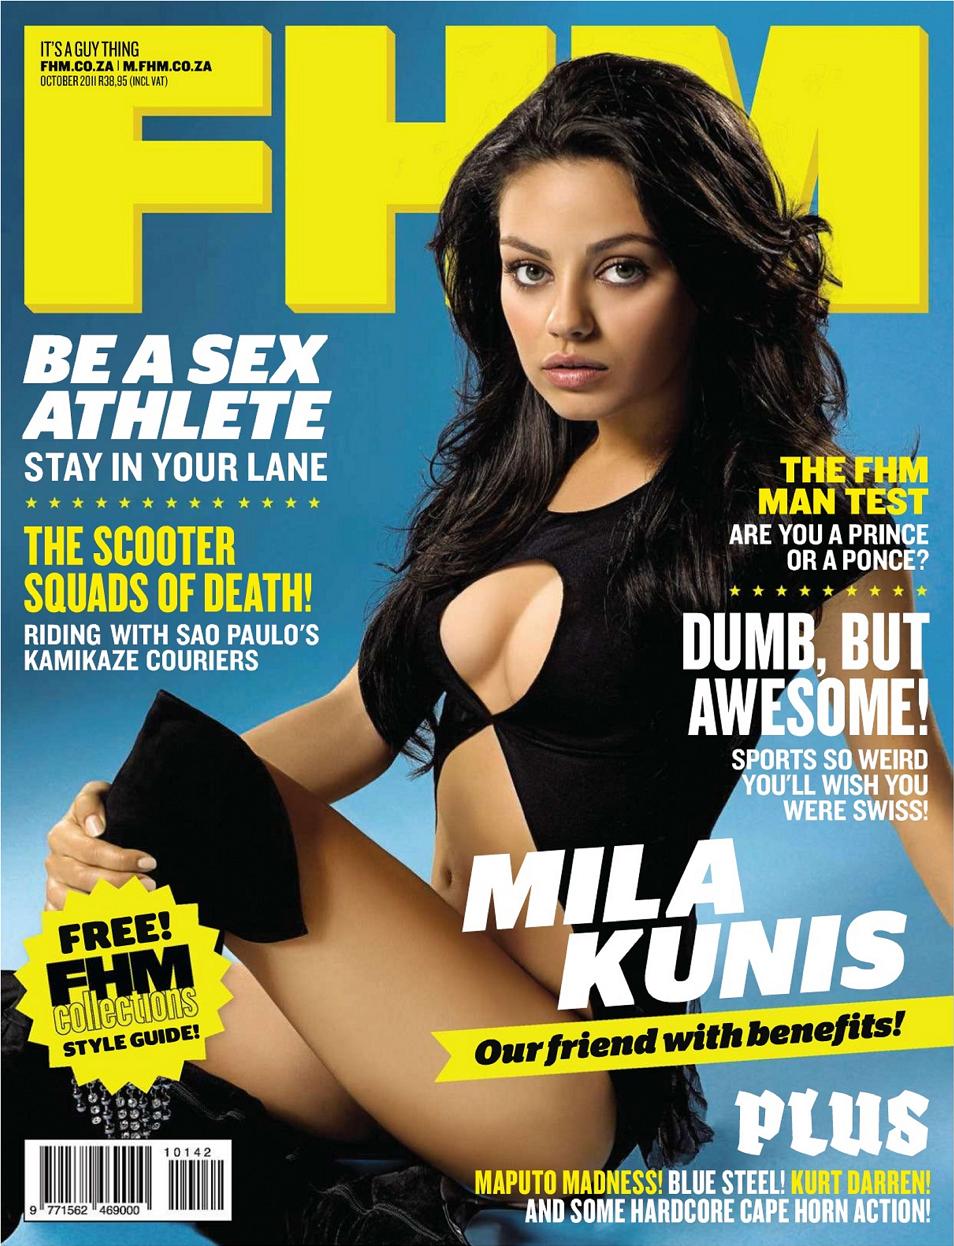 Mila Kunis a világ legszexisebb nője